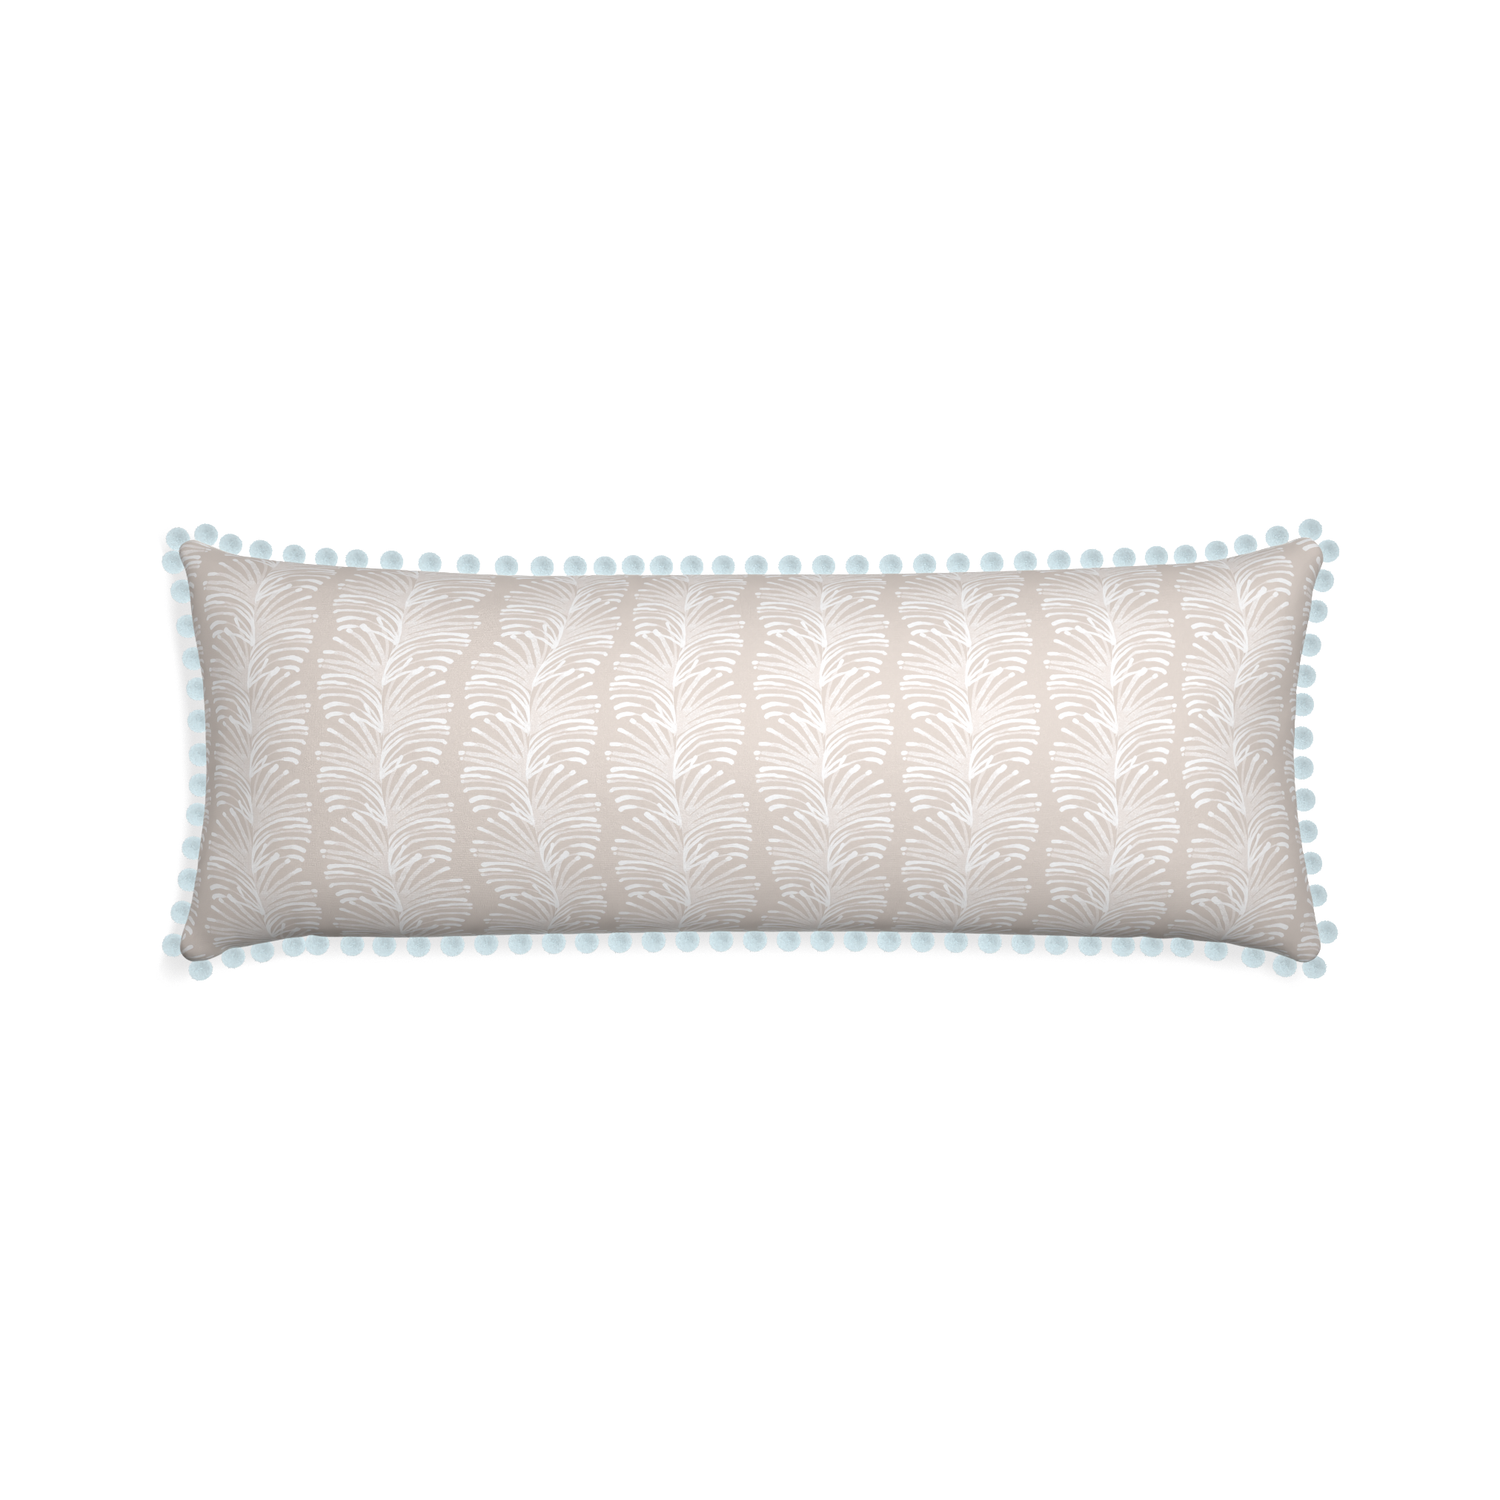 Xl-lumbar emma sand custom pillow with powder pom pom on white background